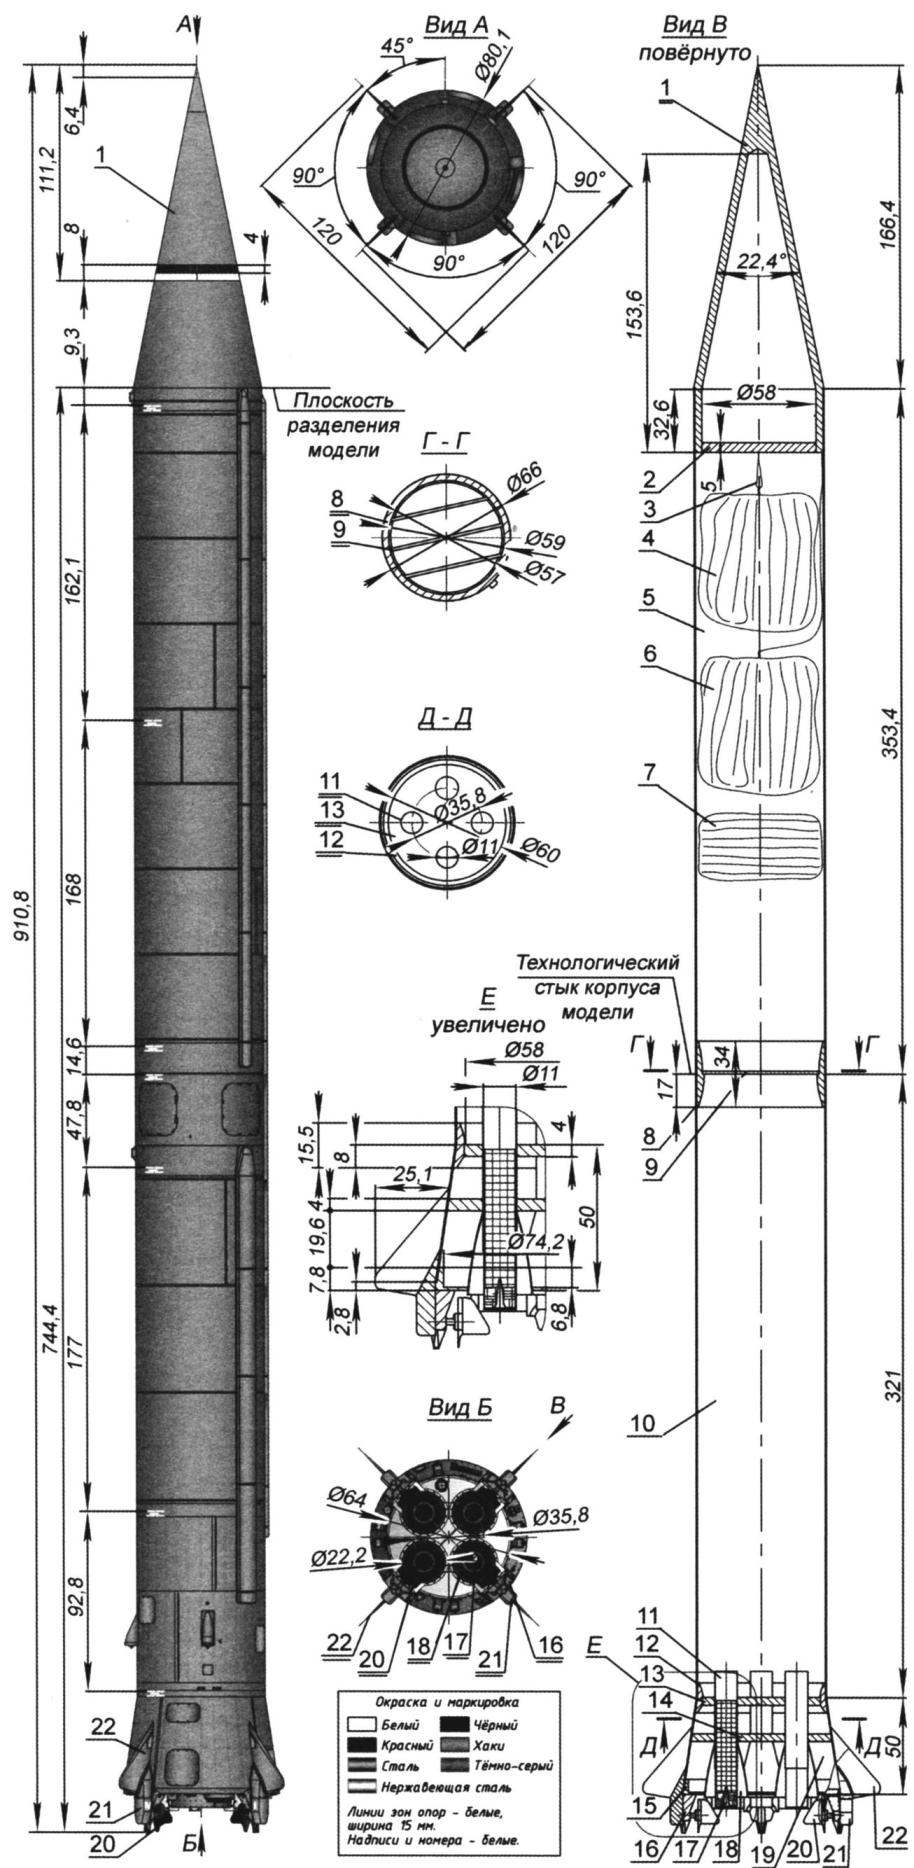 Рис. 2. Модель-копия ракеты Р-12